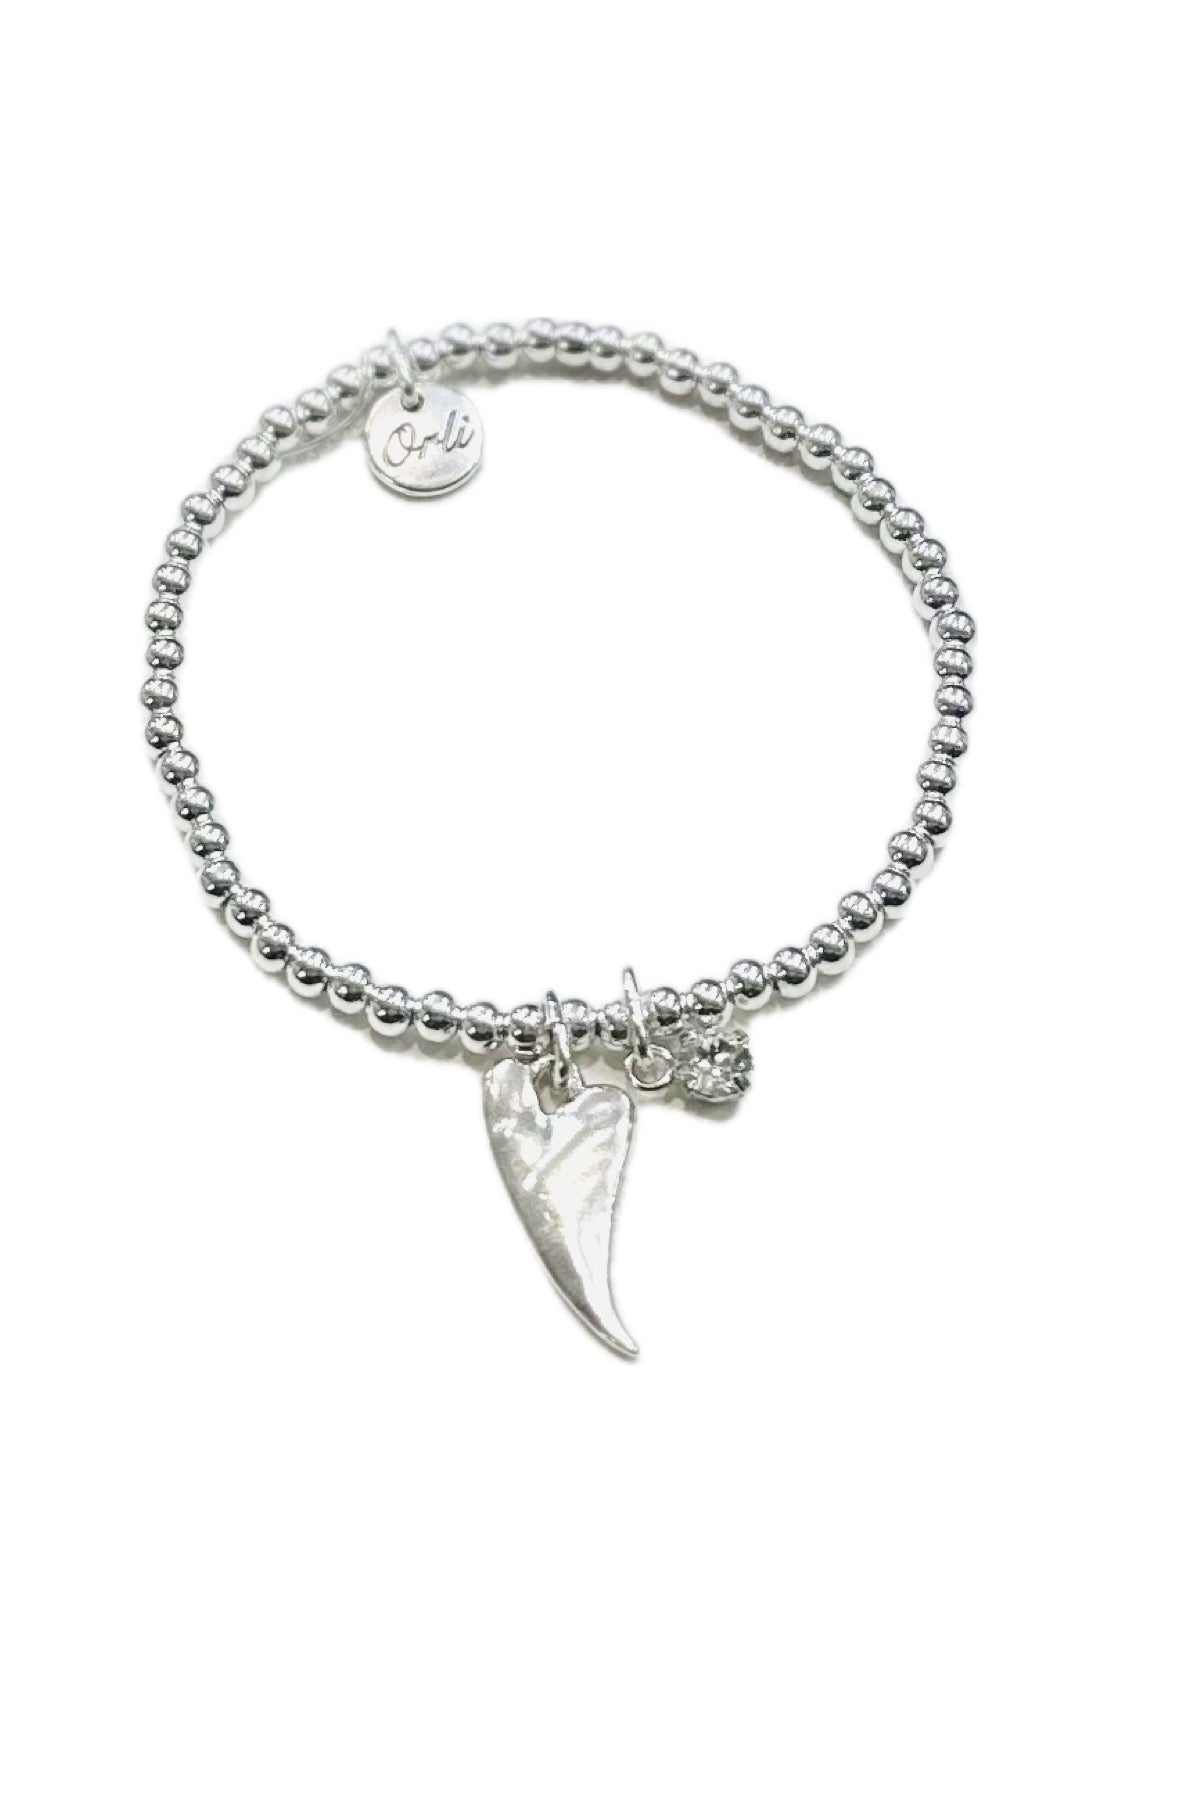 Orli Silver Shaped Heart & Crystal Stretch Bracelet